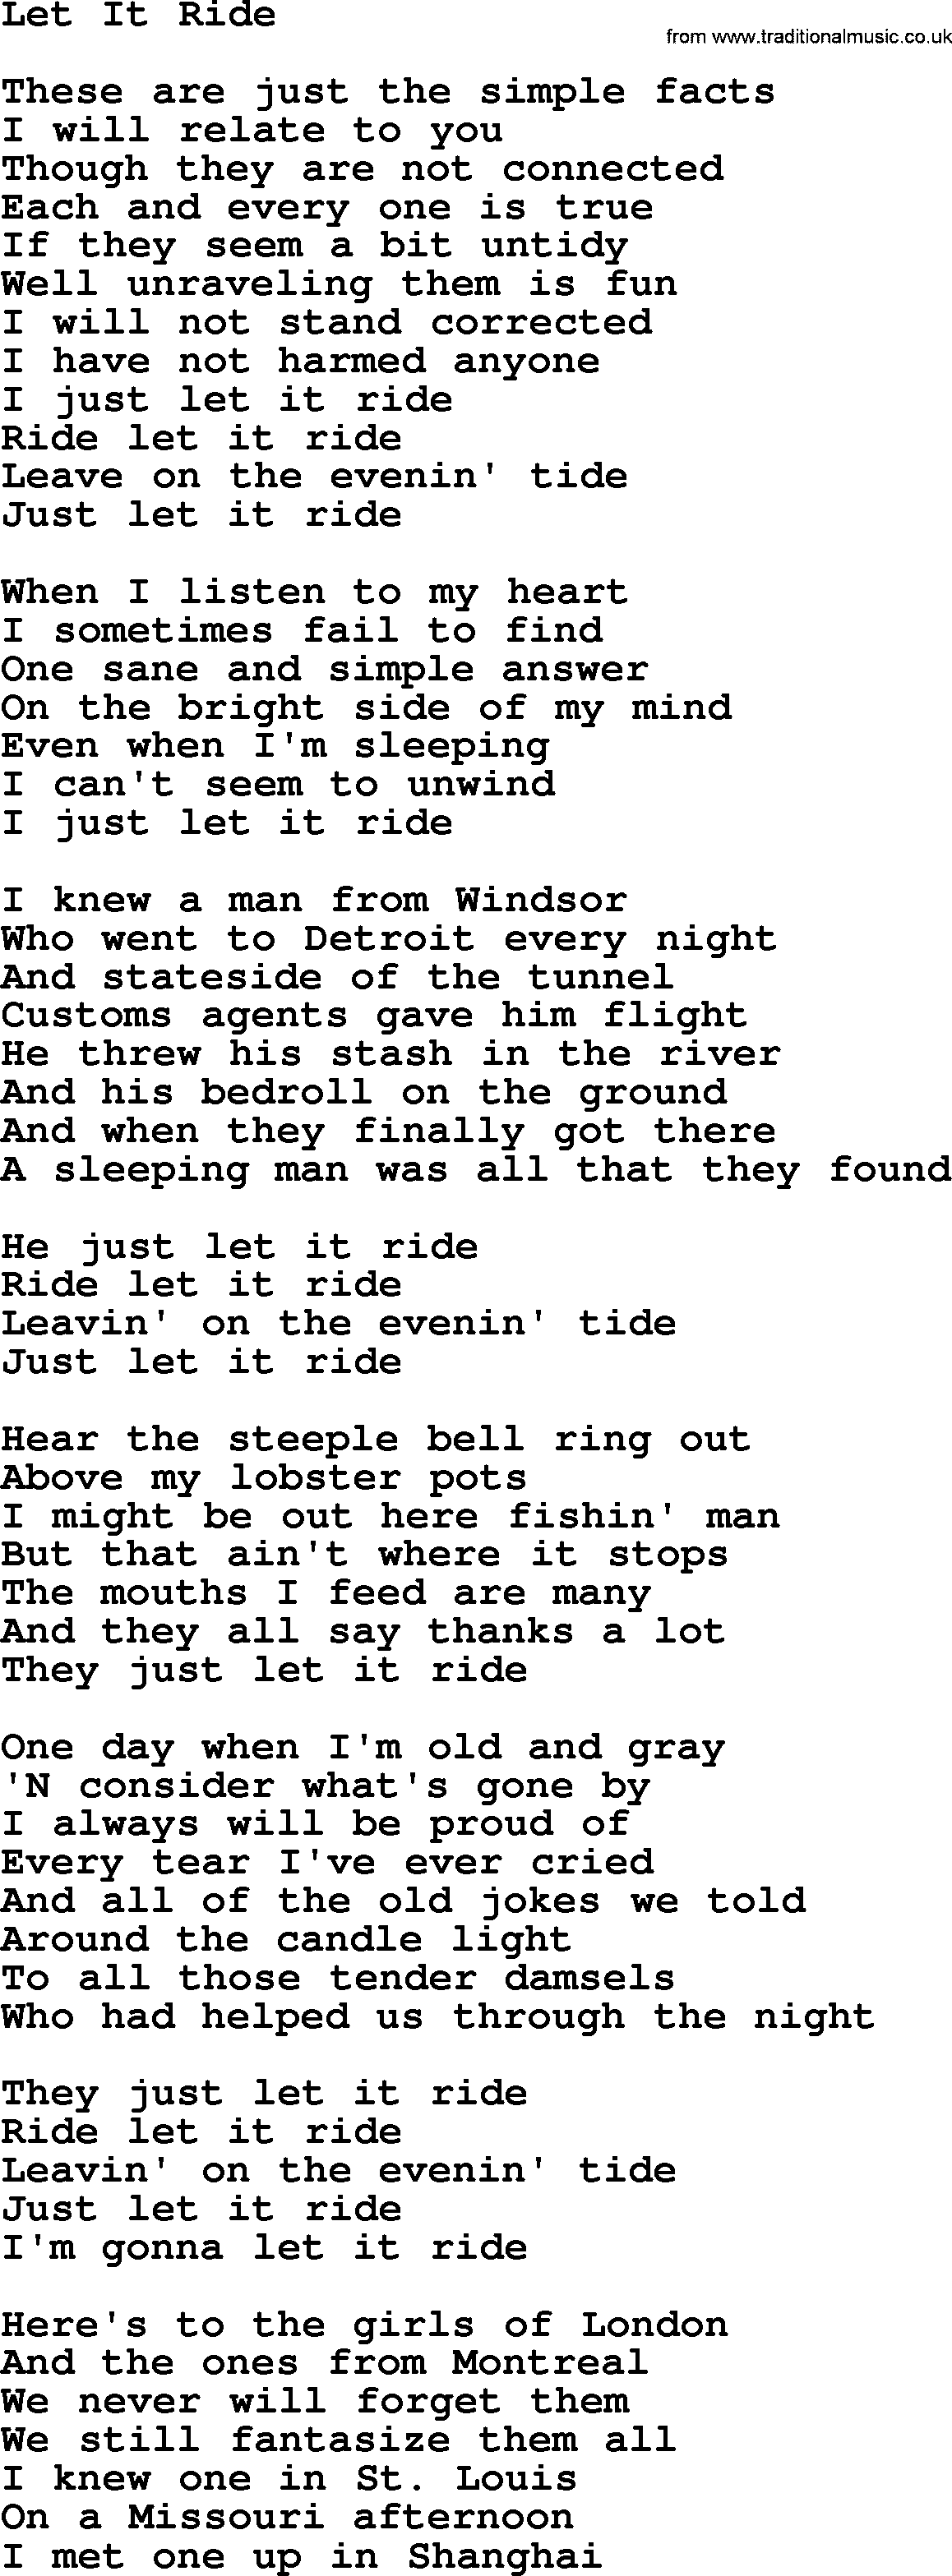 Gordon Lightfoot song Let It Ride, lyrics